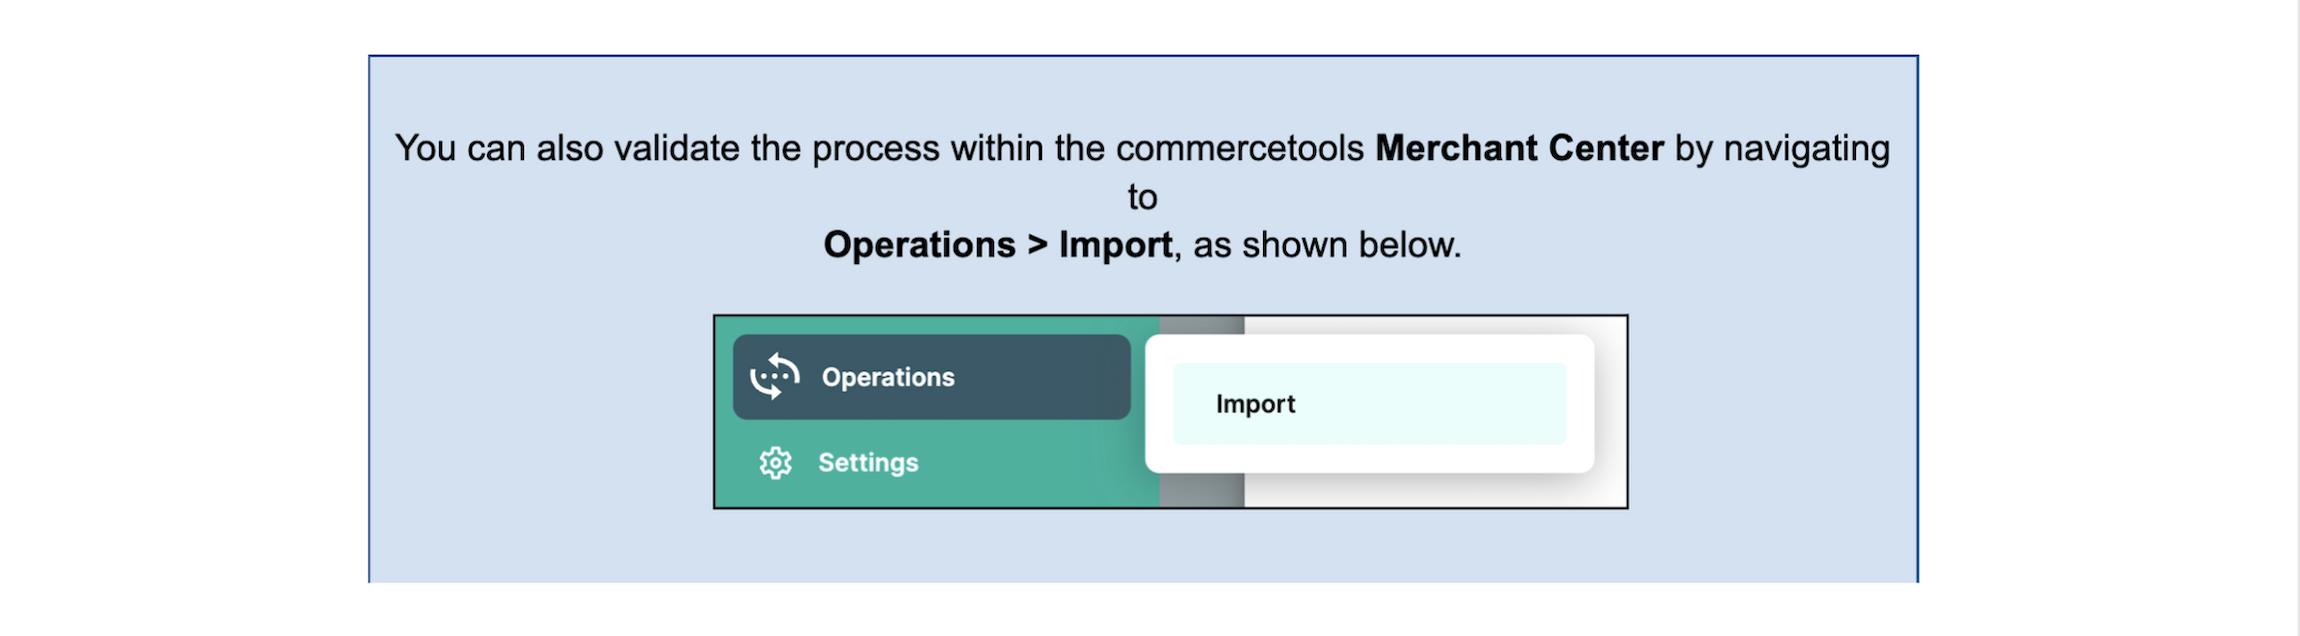 merchant center operations